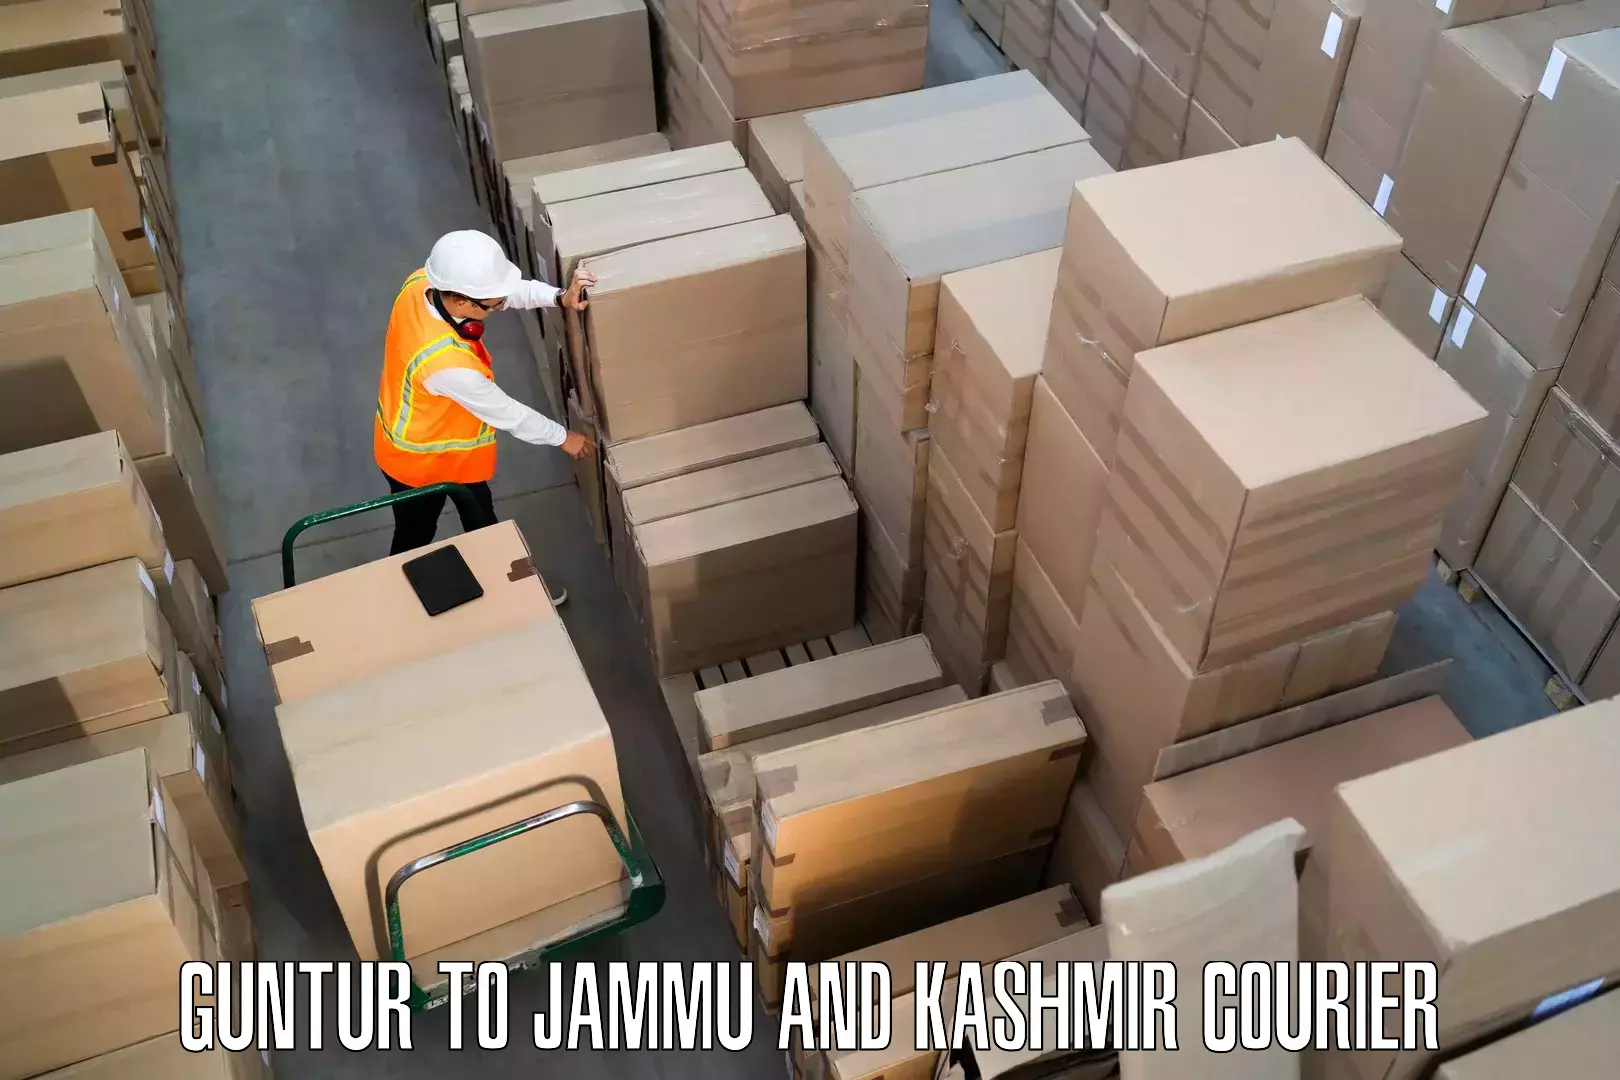 Comprehensive moving assistance Guntur to Srinagar Kashmir